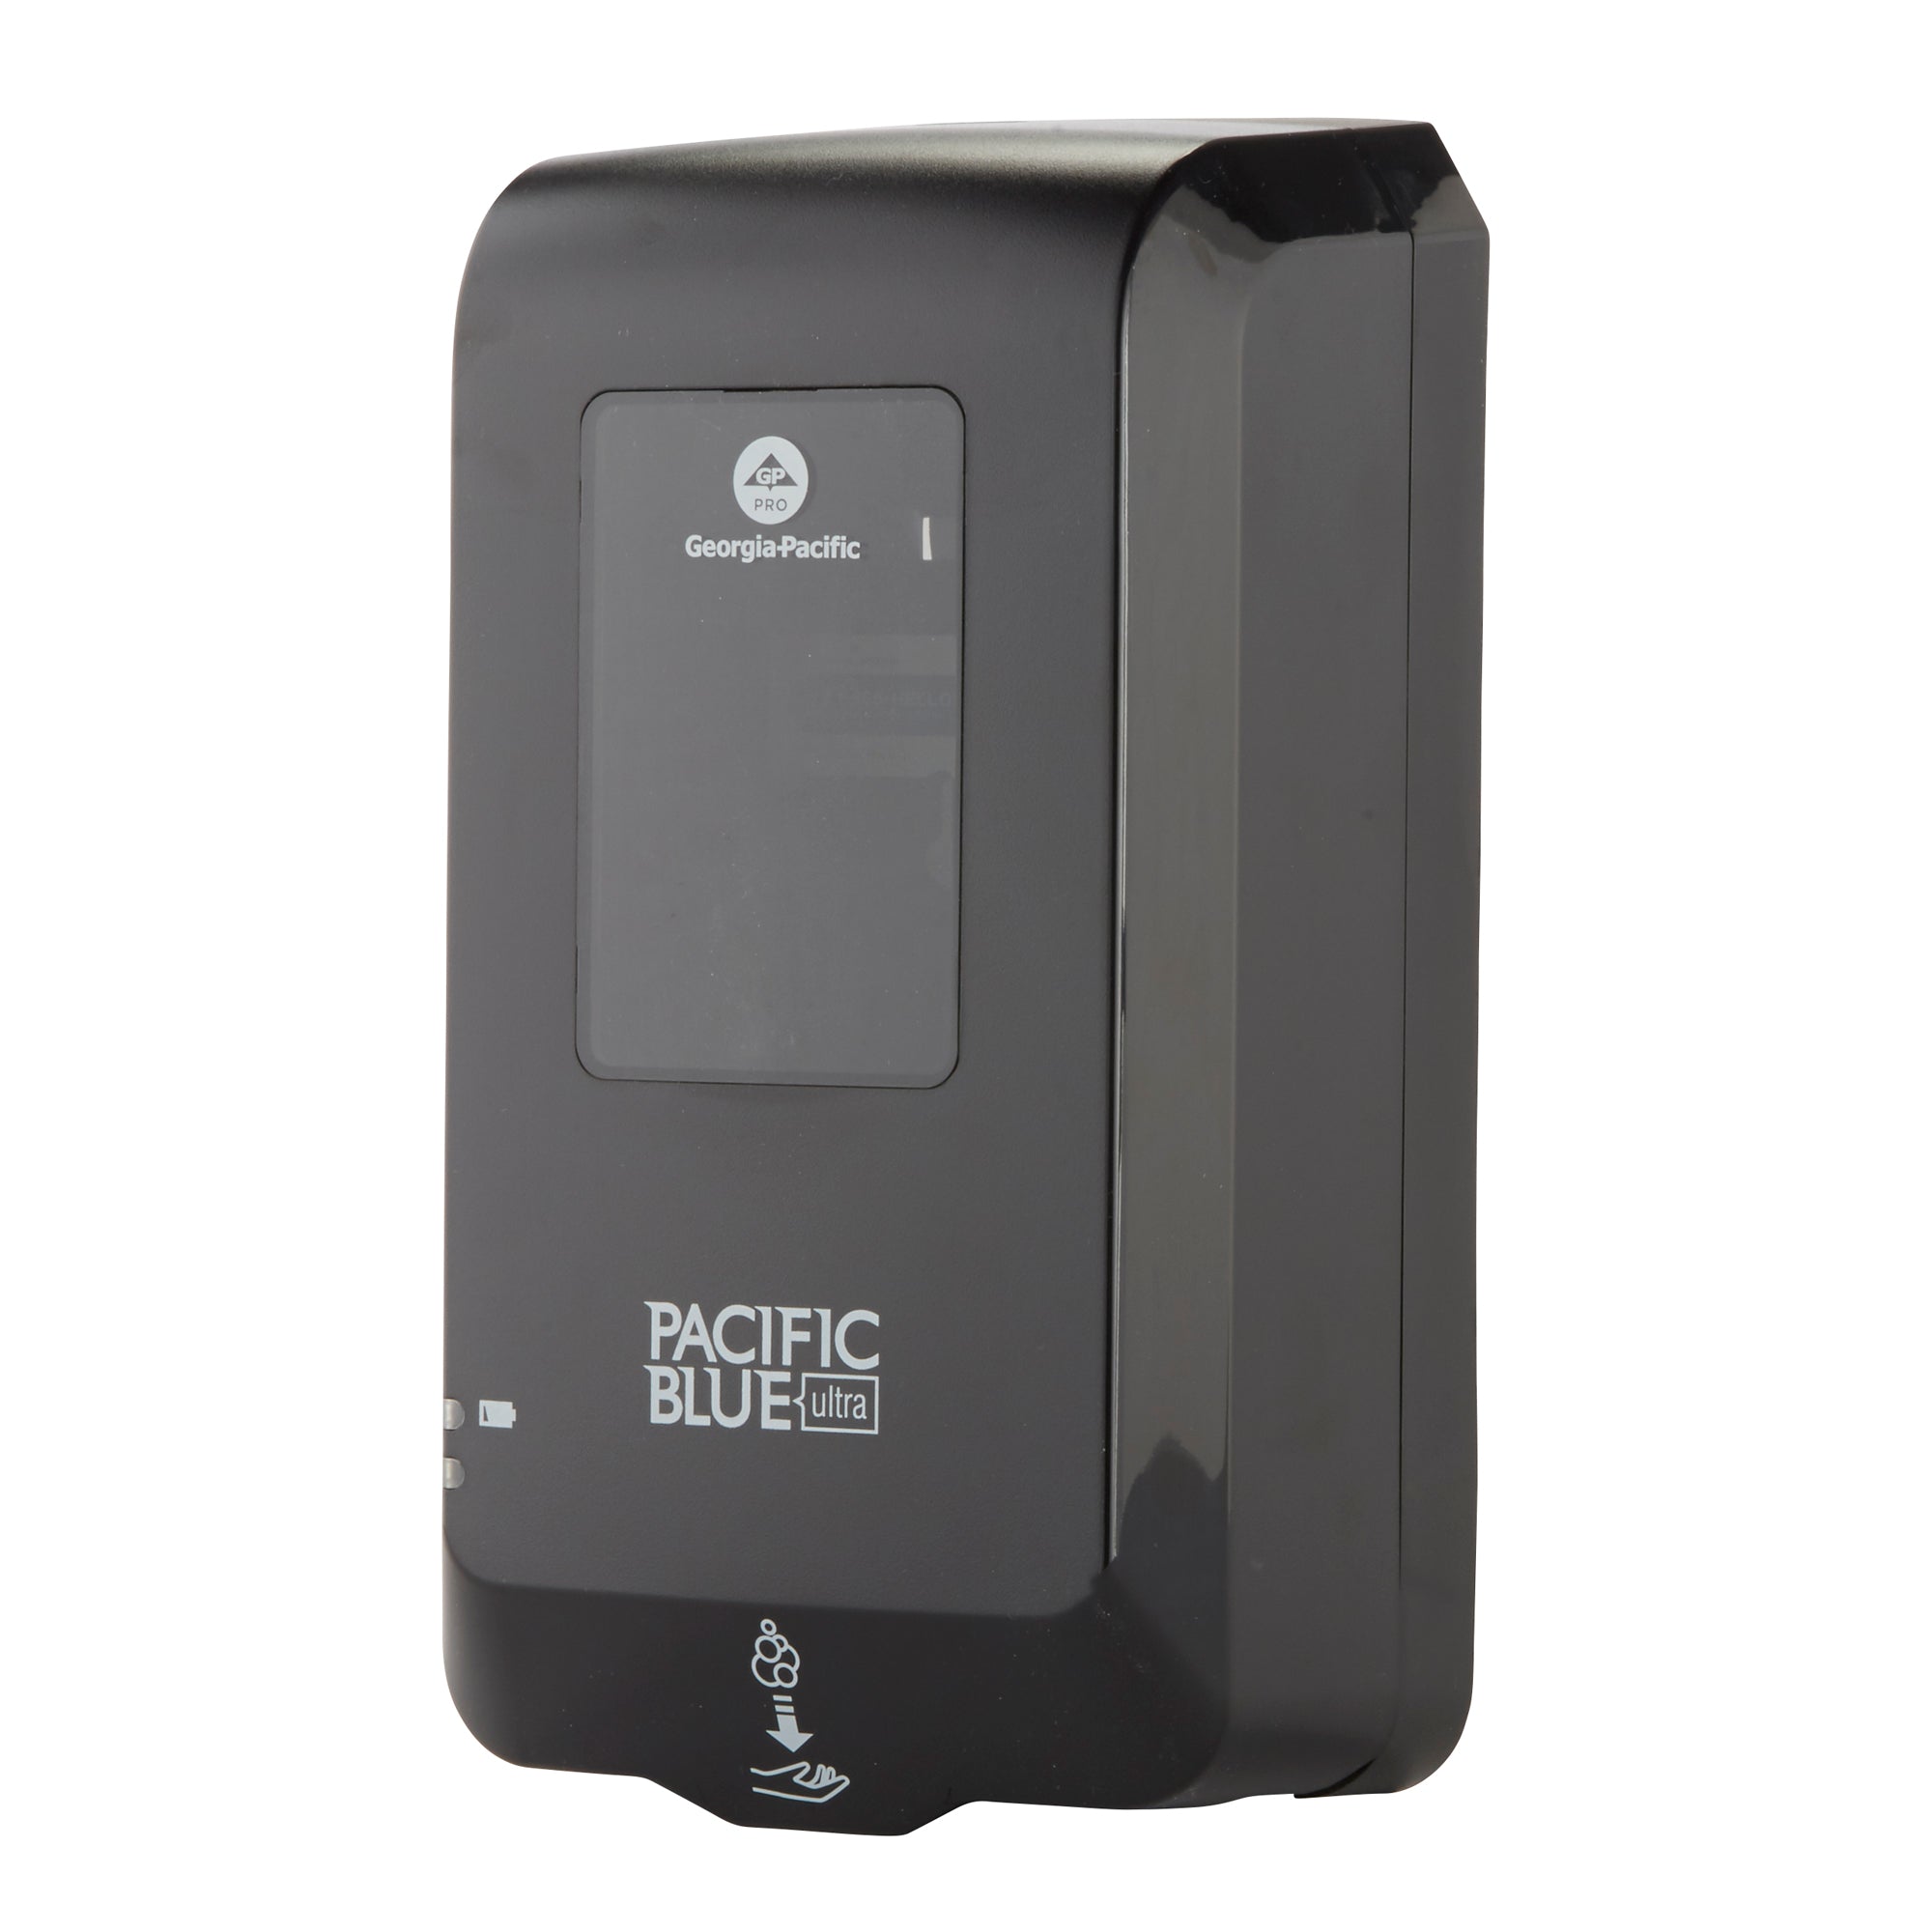 מתקן סבון וחיטוי אוטומטי ללא מגע PACIFIC BLUE ULTRA™ מאת GP PRO (ג'ורג'יה פסיפיק), שחור, מתקן אחד